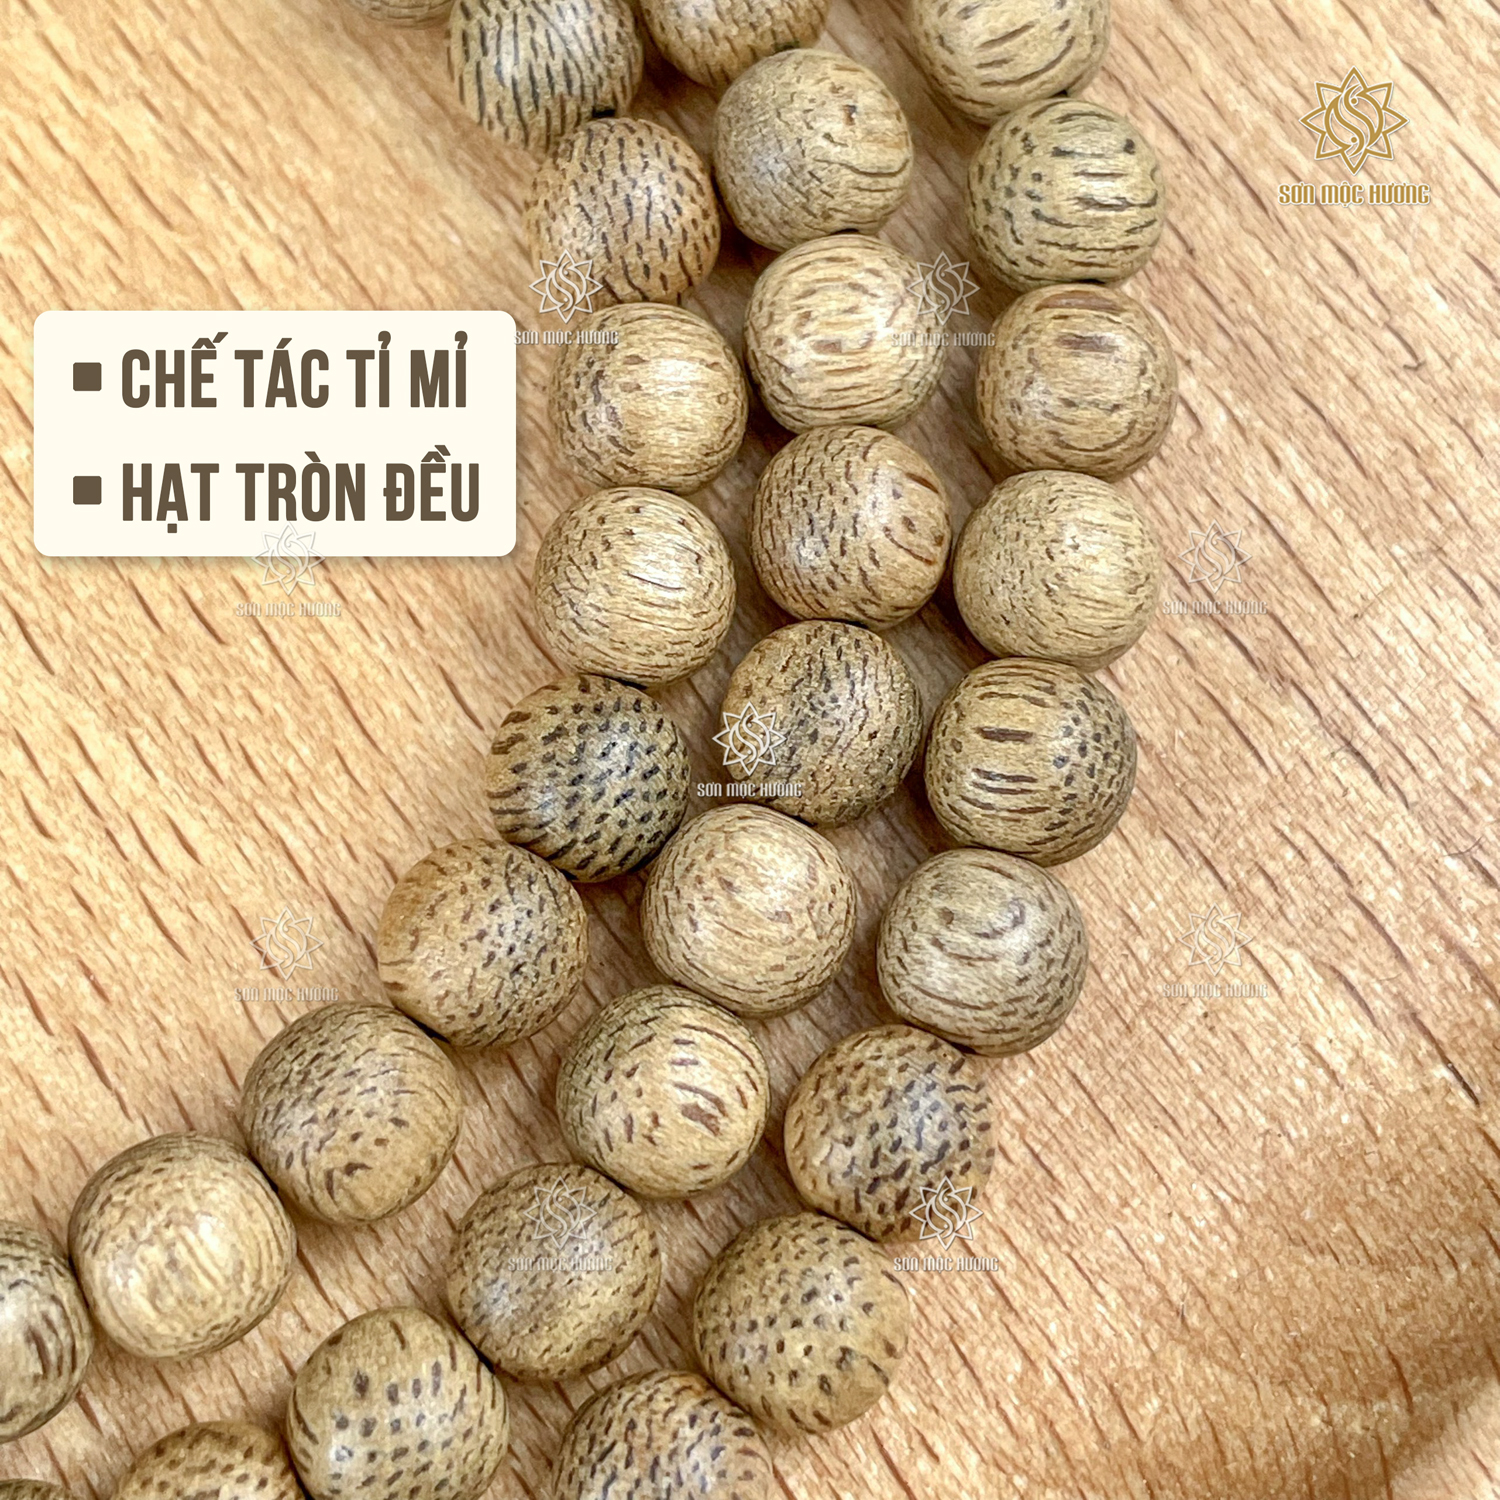 Vòng tay chuỗi 108 hạt trầm hương Sơn Mộc Hương đeo tay nam nữ mang ý nghĩa phong thủy may mắn tài lộc